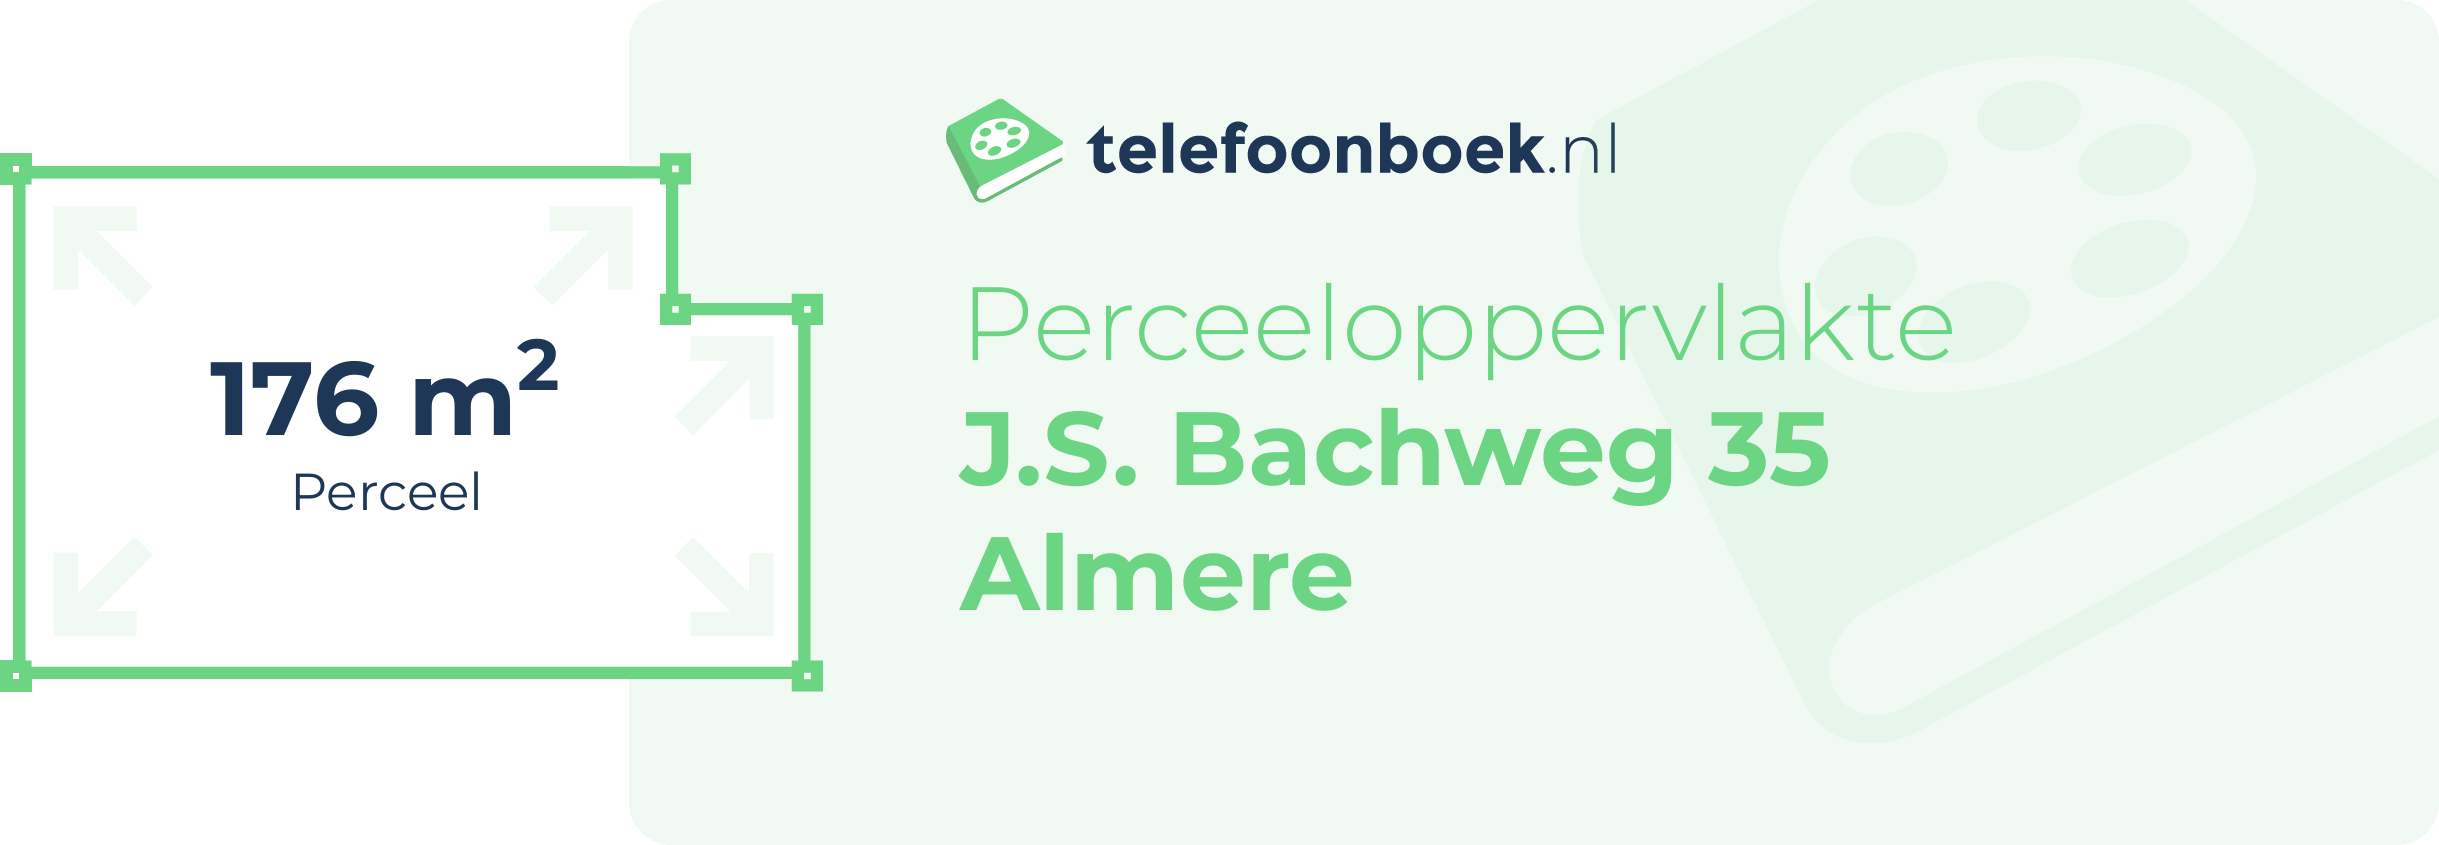 Perceeloppervlakte J.S. Bachweg 35 Almere